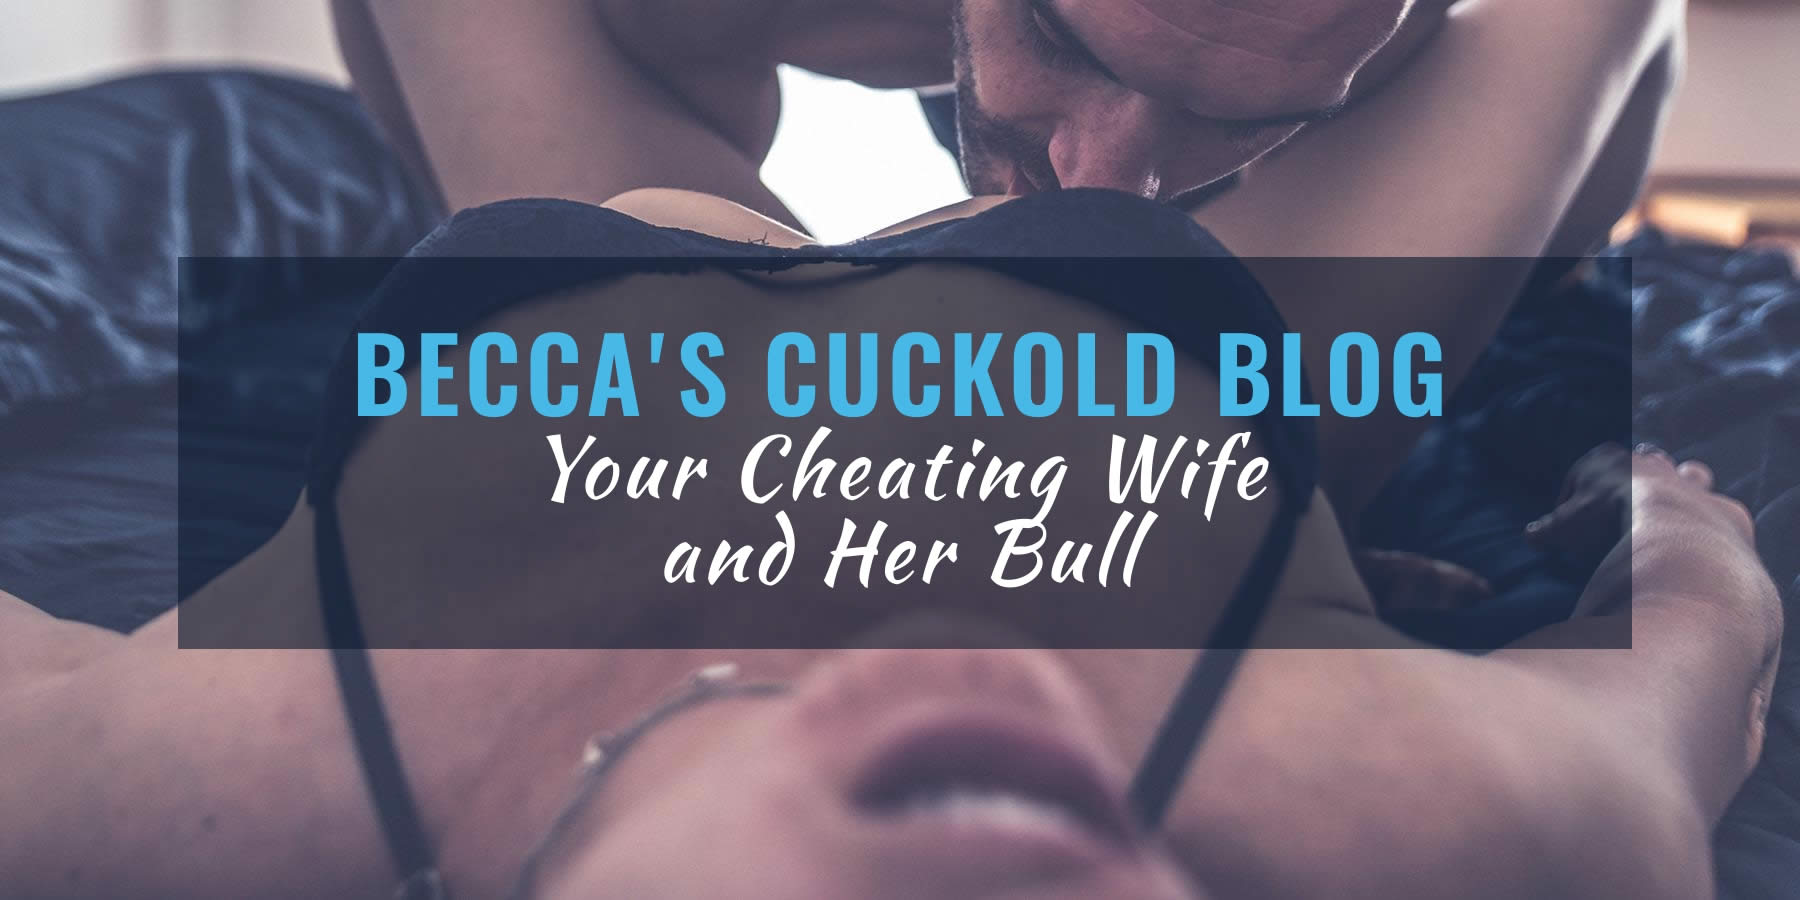 Cuckold bull blog